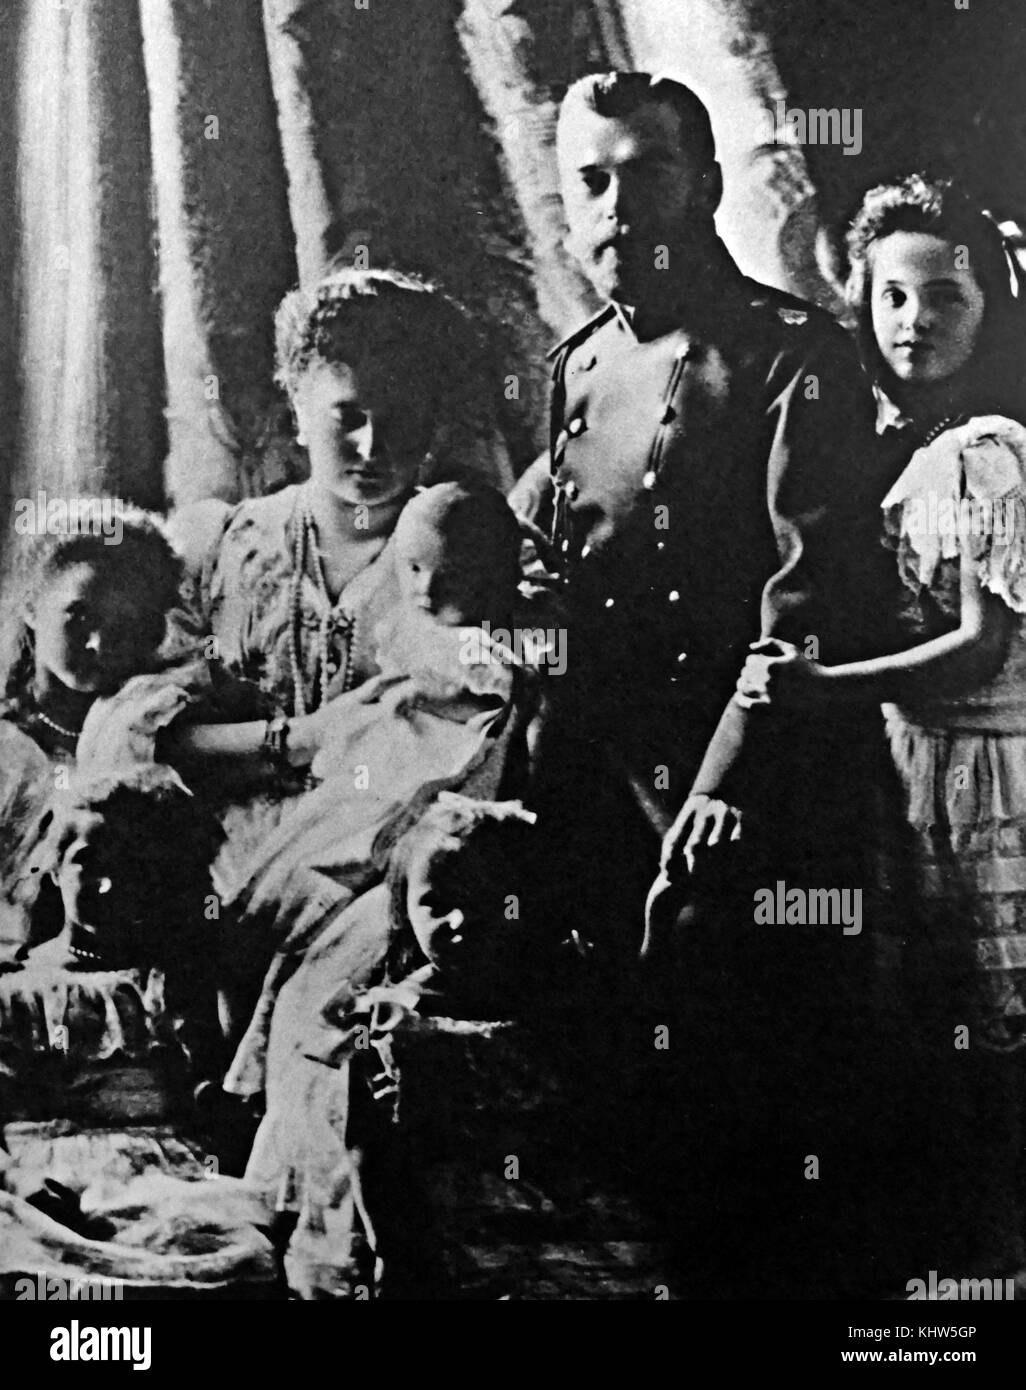 Retrato fotográfico del Zar Nicolás II de Rusia y de la Zarina Alexandra Feodorovna y sus hijos: la gran duquesa Anastasia Nikolaevna de Rusia (1901-1918), la gran duquesa Olga Nikolaevna de Rusia (1895-1918), Alexei Nikolaevich, Tsarevich de Rusia (1904-1918), la Gran Duquesa María Nikolaevna de Rusia (1899-1918) y la gran duquesa Tatiana Nikolaevna de Rusia (1897-1918). Nicolás II de Rusia (1868-1918) el último emperador de Rusia. Alexandra Feodorovna (1872-1918), emperatriz de Rusia como cónyuge de Nicolás II. Fecha Siglo XX Foto de stock